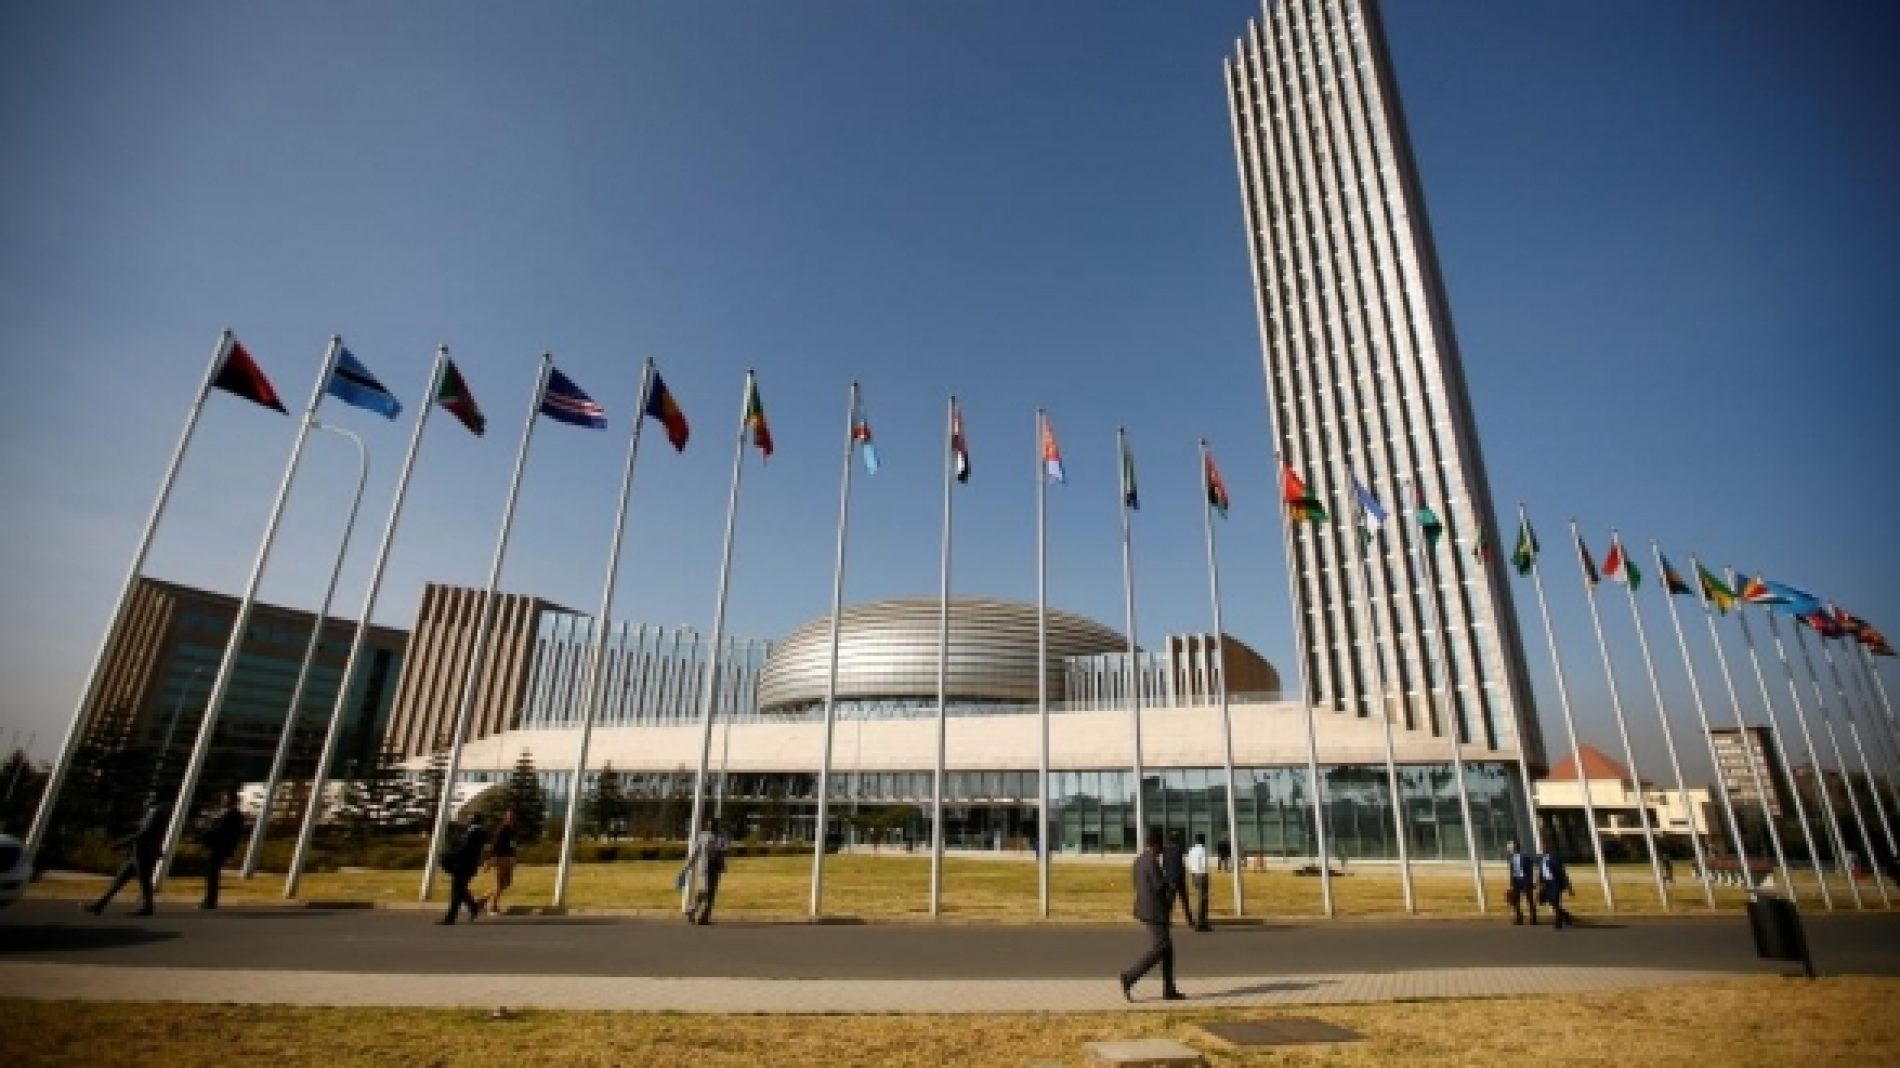 Développement urbain : la réunion du comité technique spécialisé de l’union africaine s’ouvre à rabat